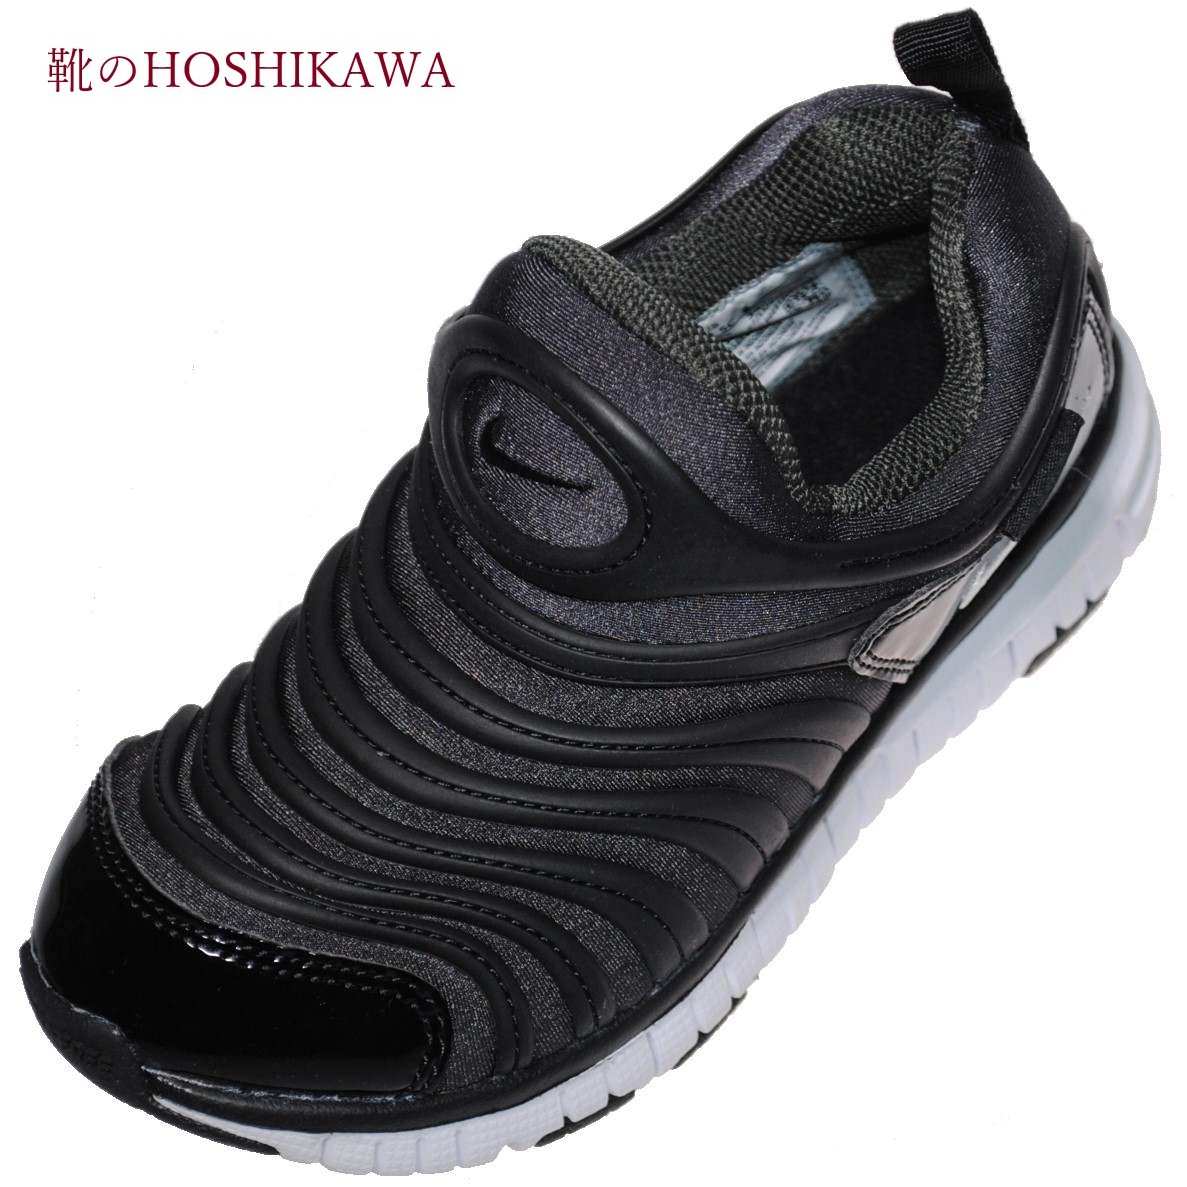 楽天市場 靴のhoshikawa Nike 013 ナイキ ダイナモフリー18cm 22cm キッズスリッポン ブラック 靴のｈｏｓｈｉｋａｗa楽天市場店